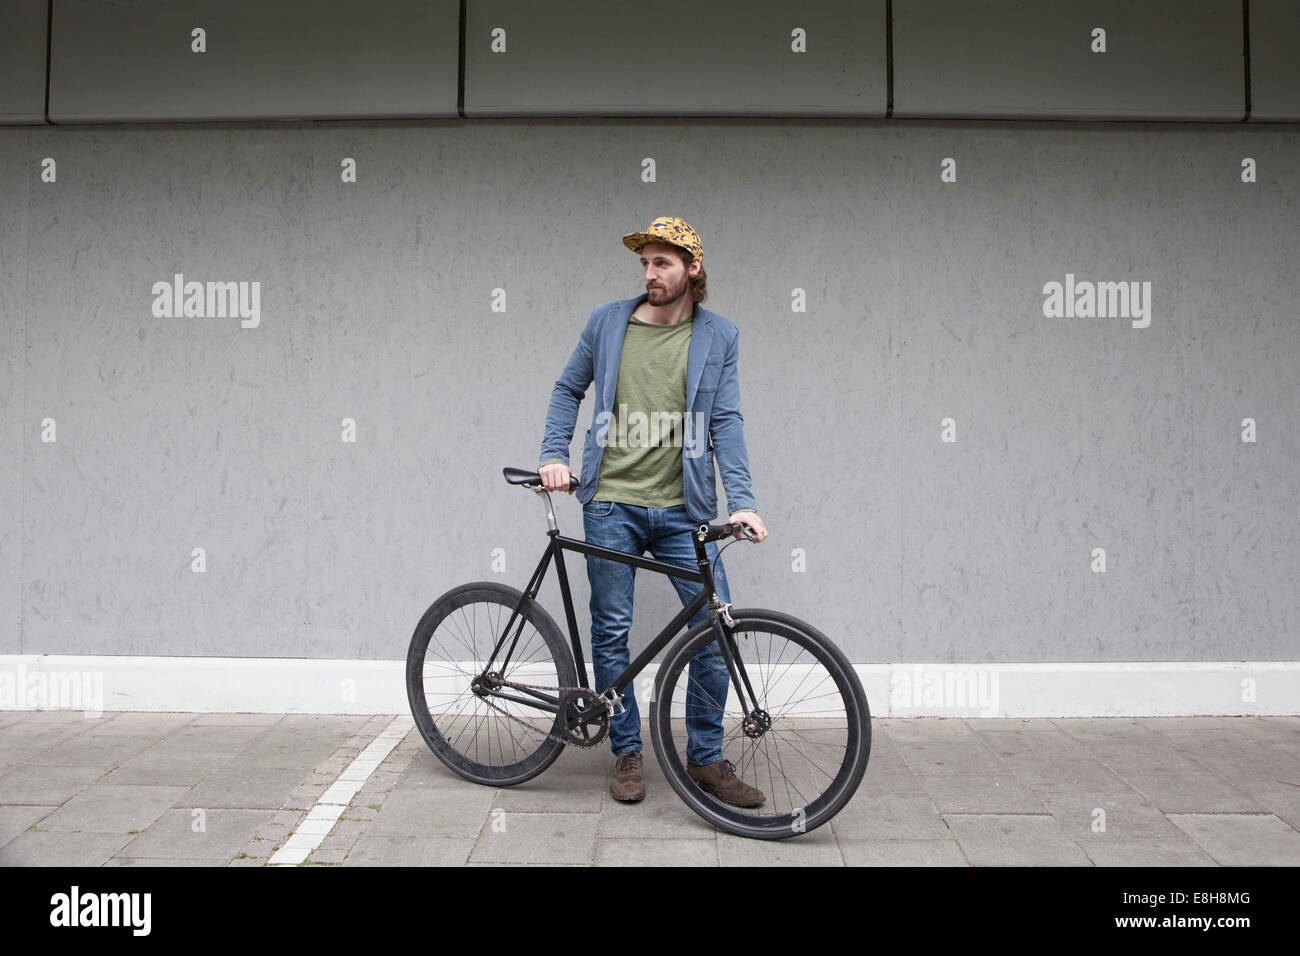 Deutschland, Bayern, München, junger Mann mit Basecap stehen vor einer Wand mit seinem Renn-Zyklus Stockfoto